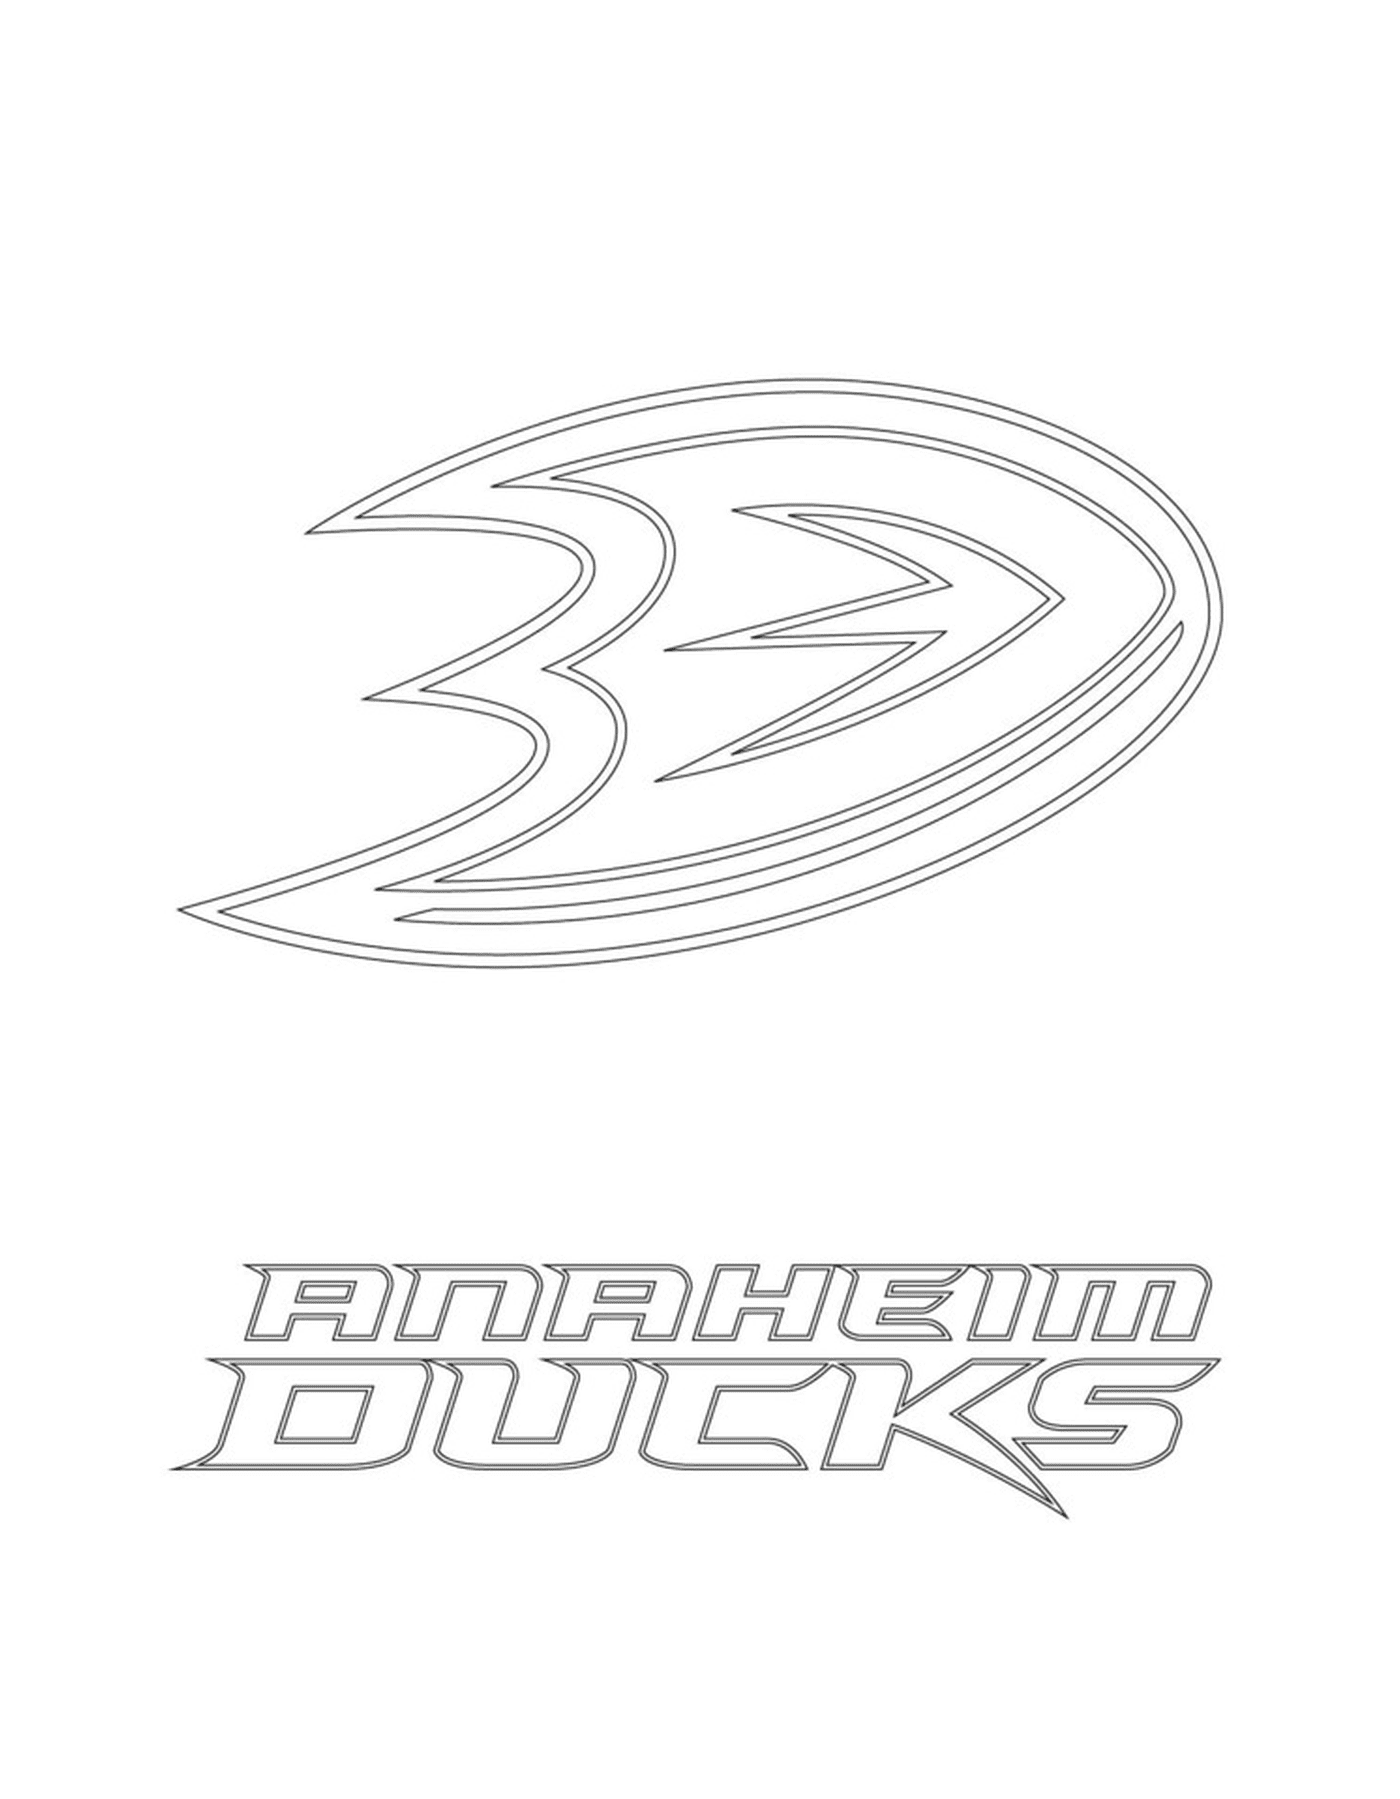  Logotipo dos Patos de Anaheim 